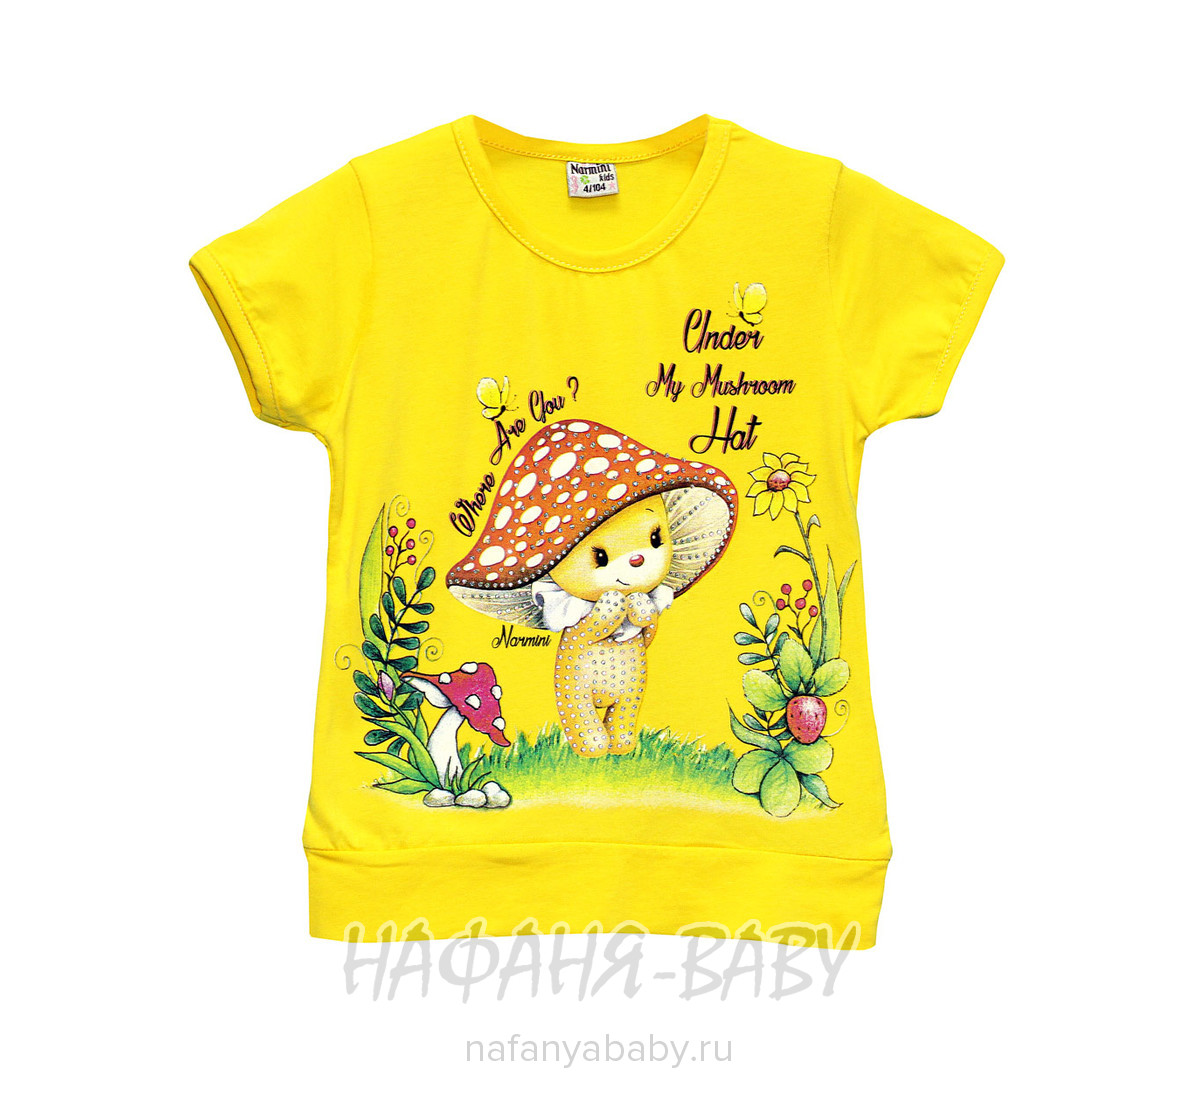 Детская футболка NARMINI арт: 5509, 1-4 года, цвет розовый, оптом Турция